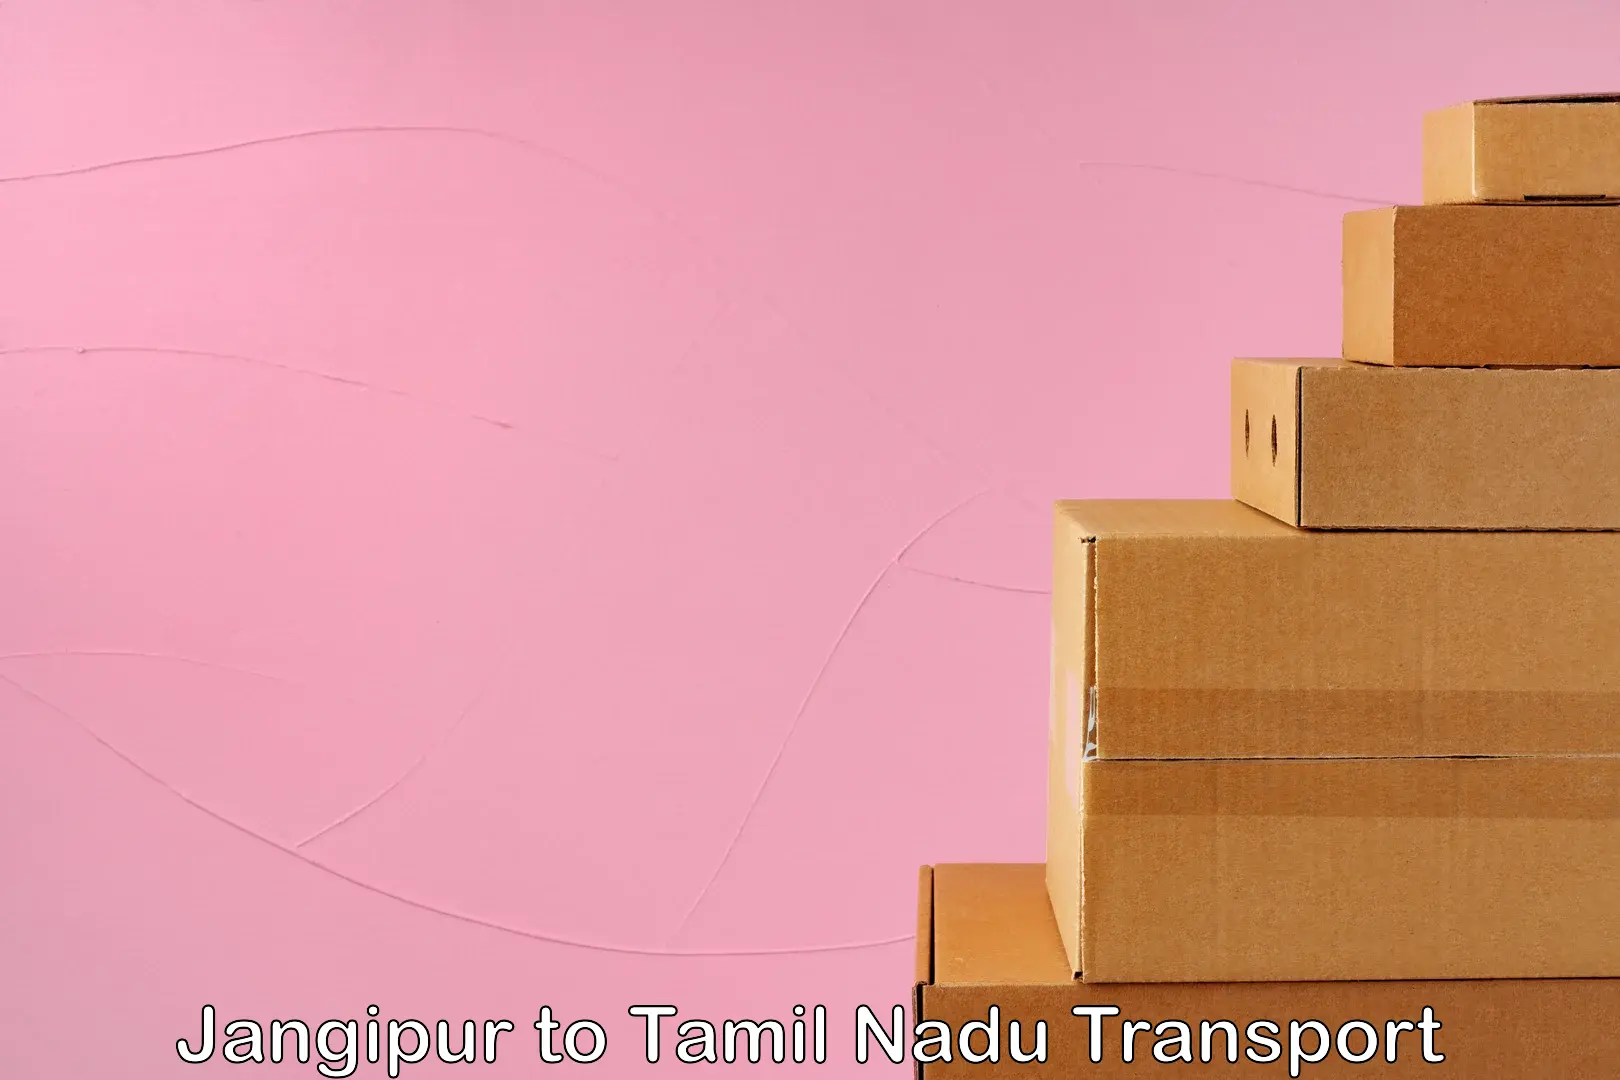 Road transport online services Jangipur to Tamil Nadu